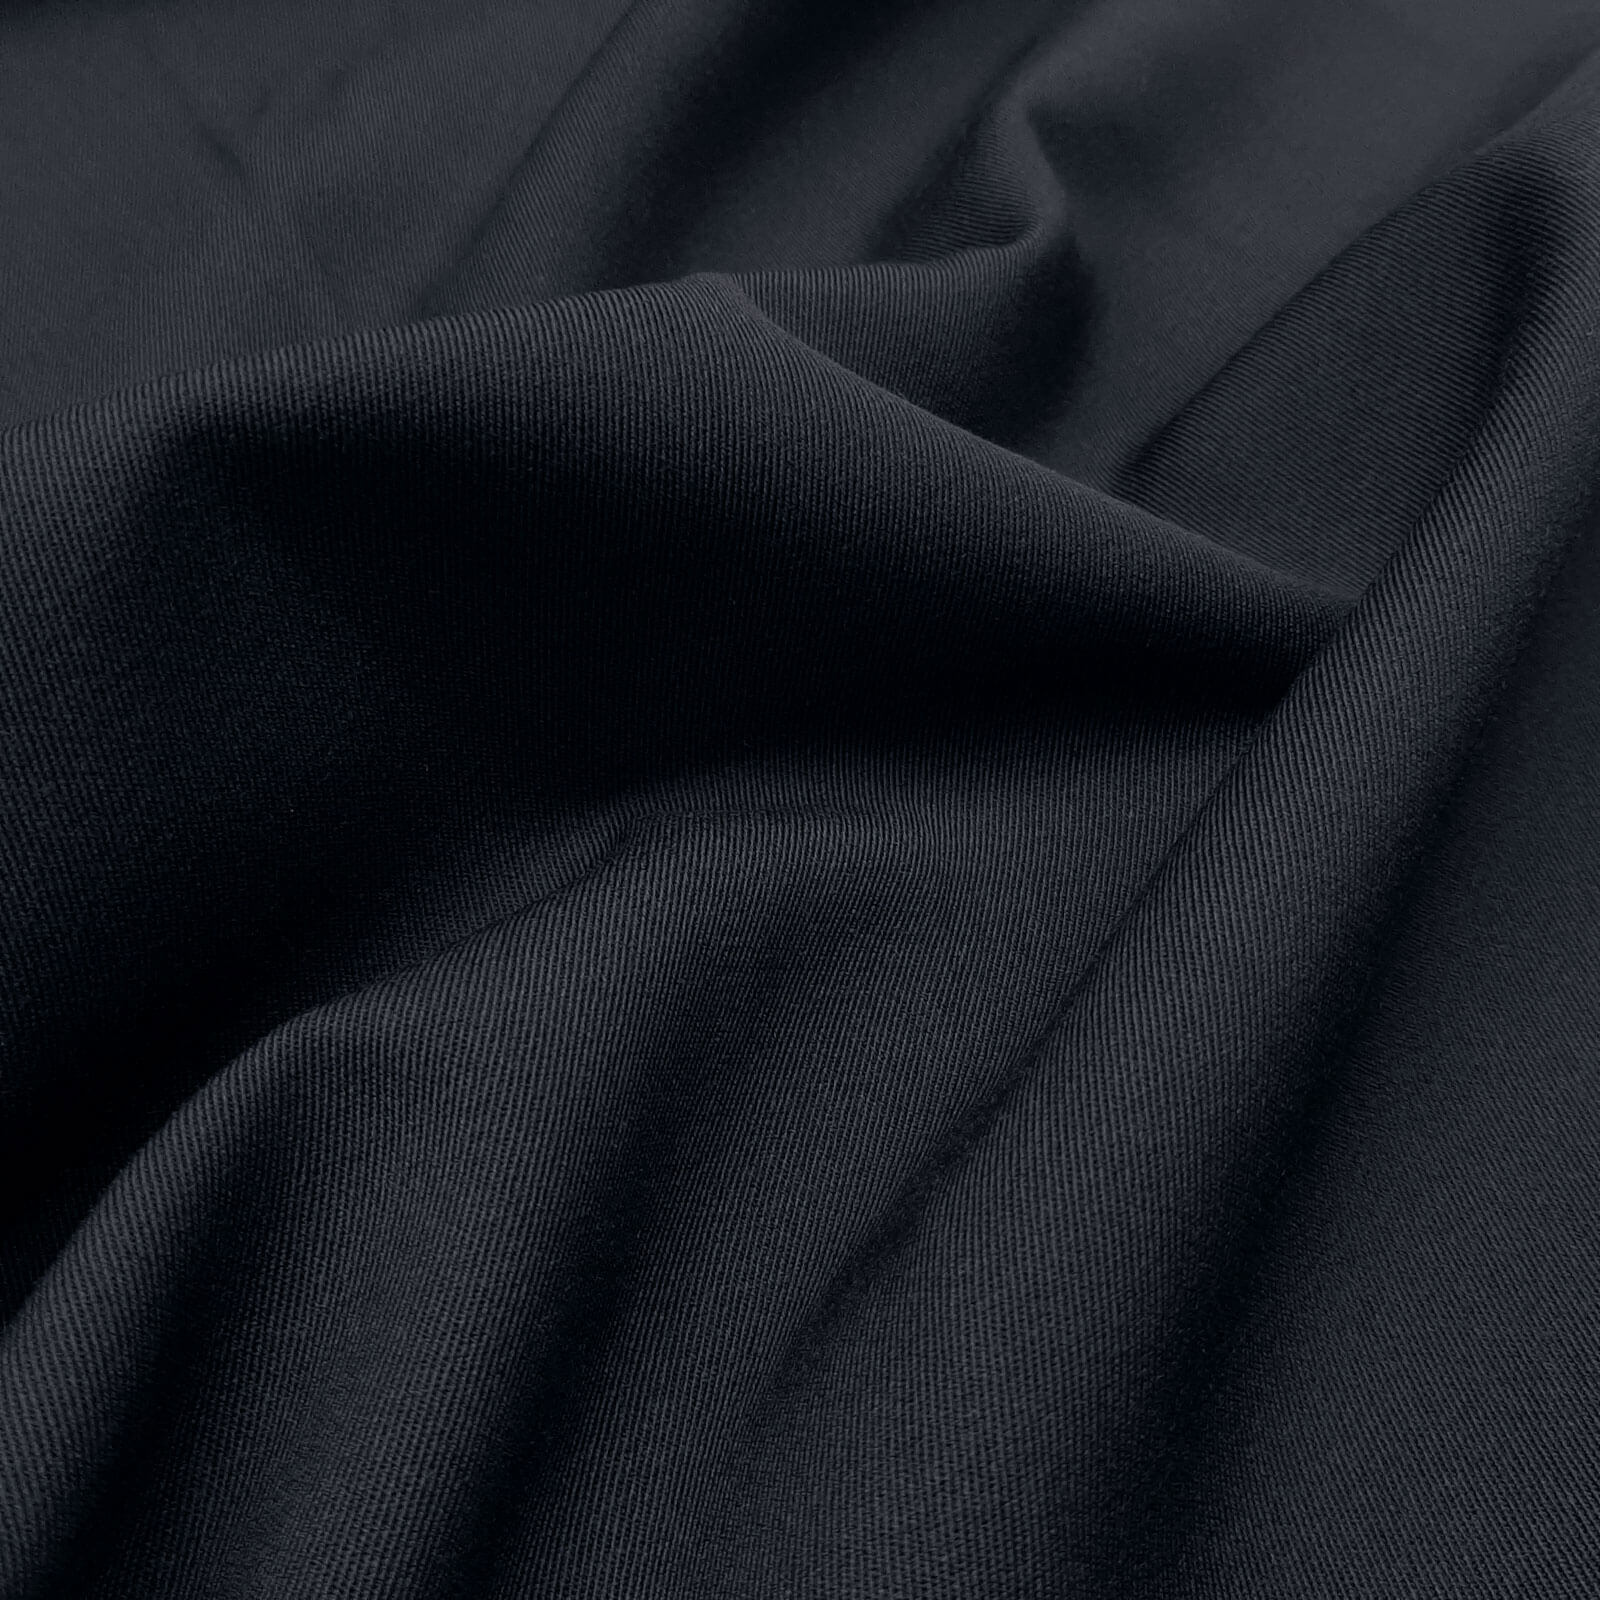 Franziska - paño de lana 100% lana virgen / paño de uniforme – Marina